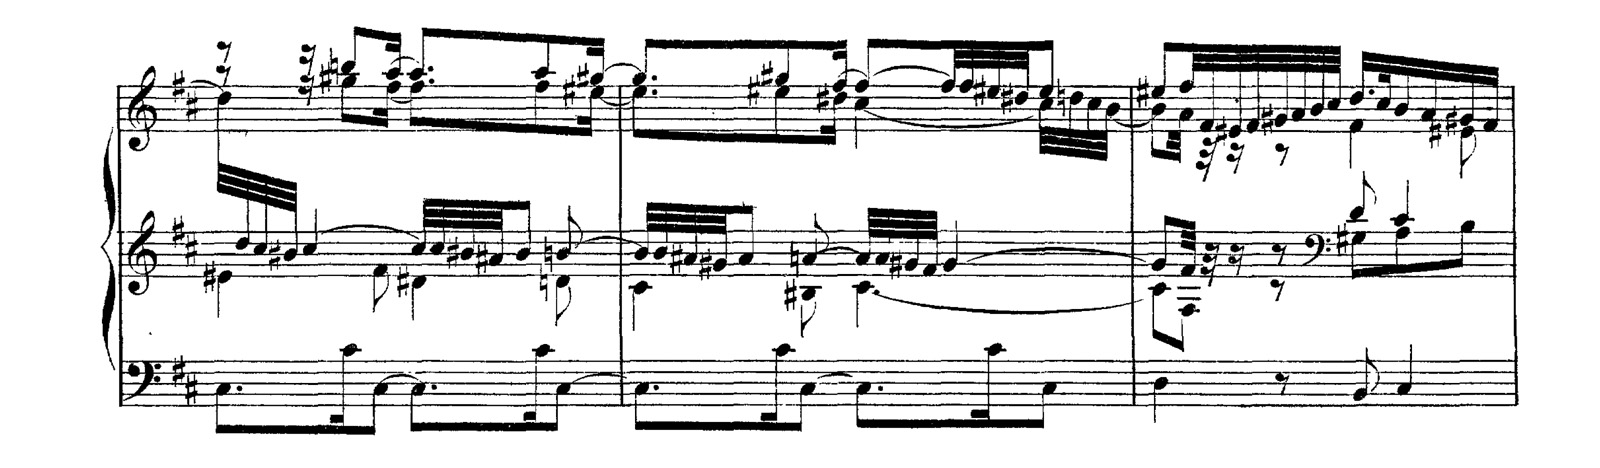 L'une des plus anciennes éditions de l'œuvre d'orgue de Bach (BWV 544, Bach Gesellschaft Ausgabe), disponible seulement en scans de qualité médiocre ou en ré-impression.